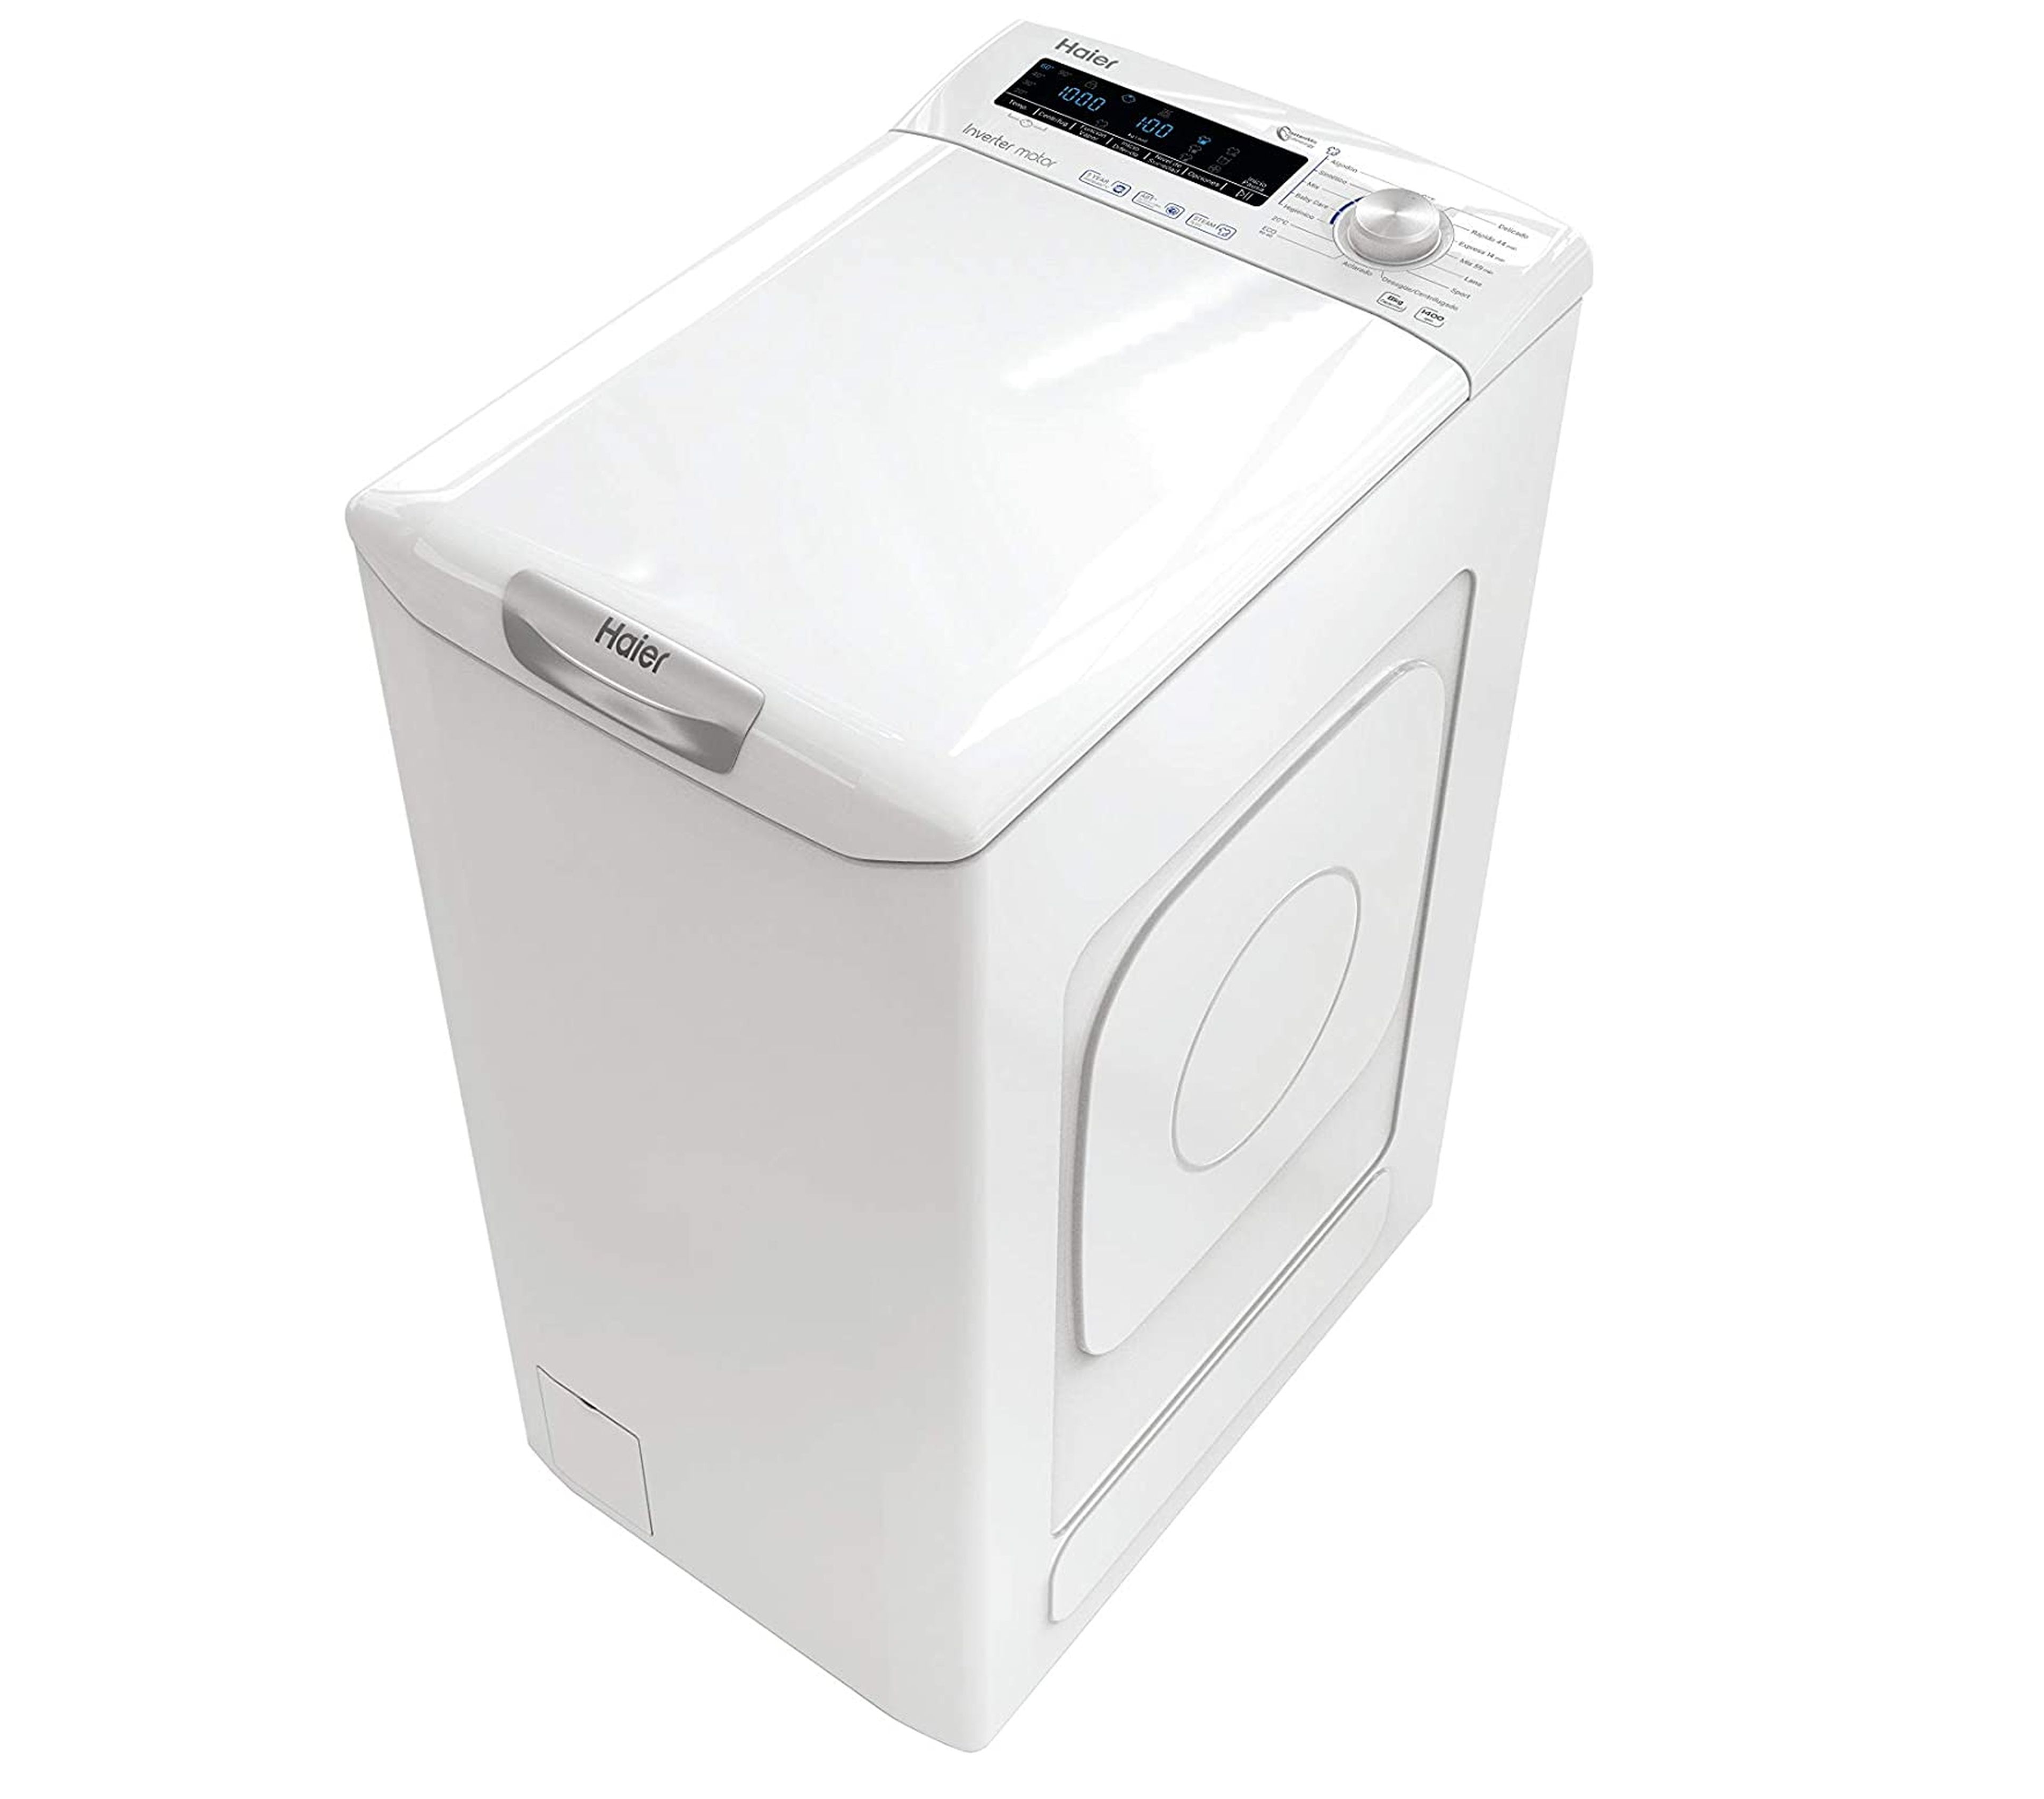 Las mejores lavadoras de carga superior que puedes comprar en 2021